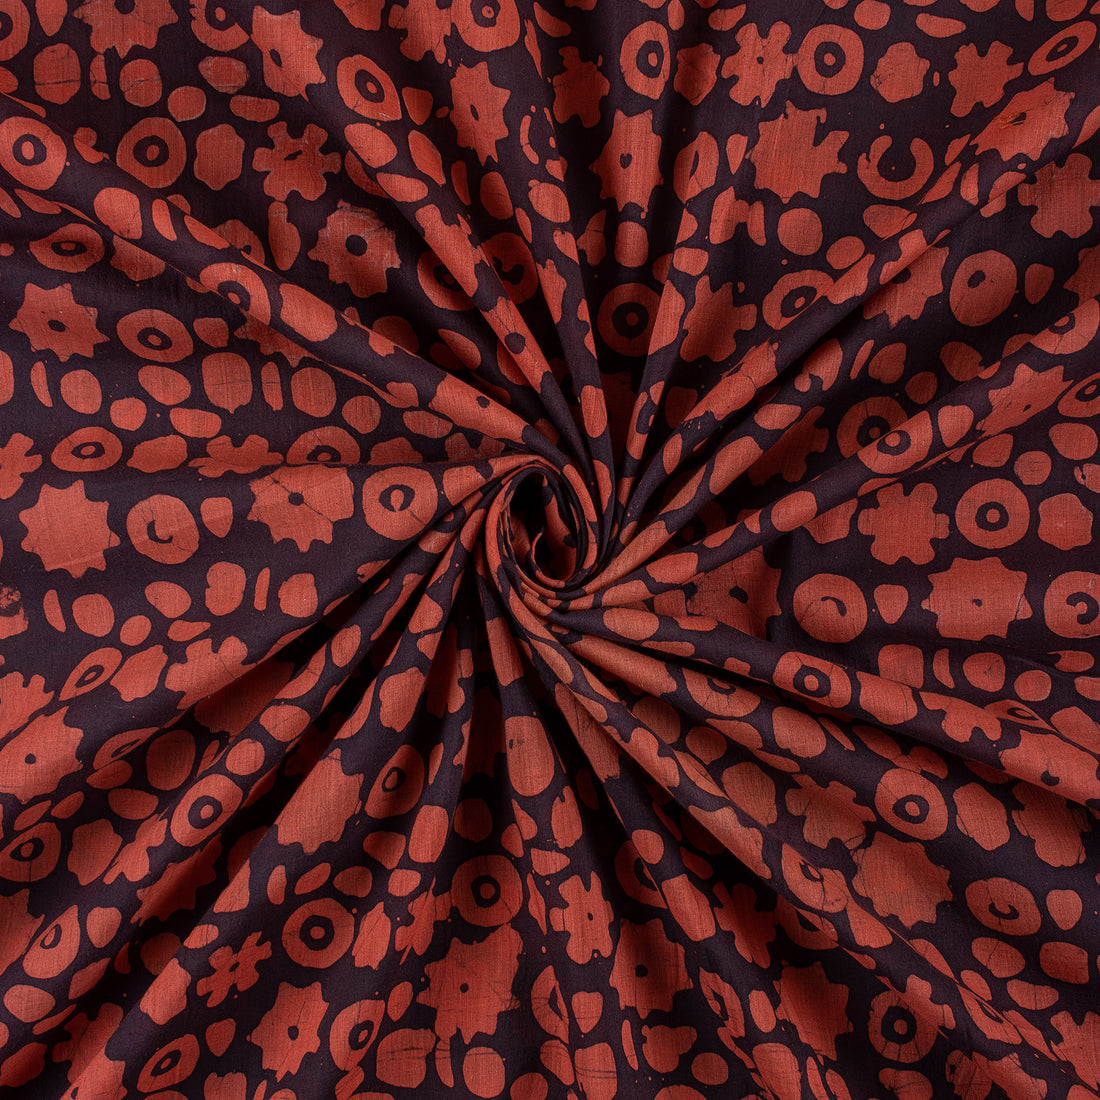 Abstract Printed Dabu Cotton Modal Fabric